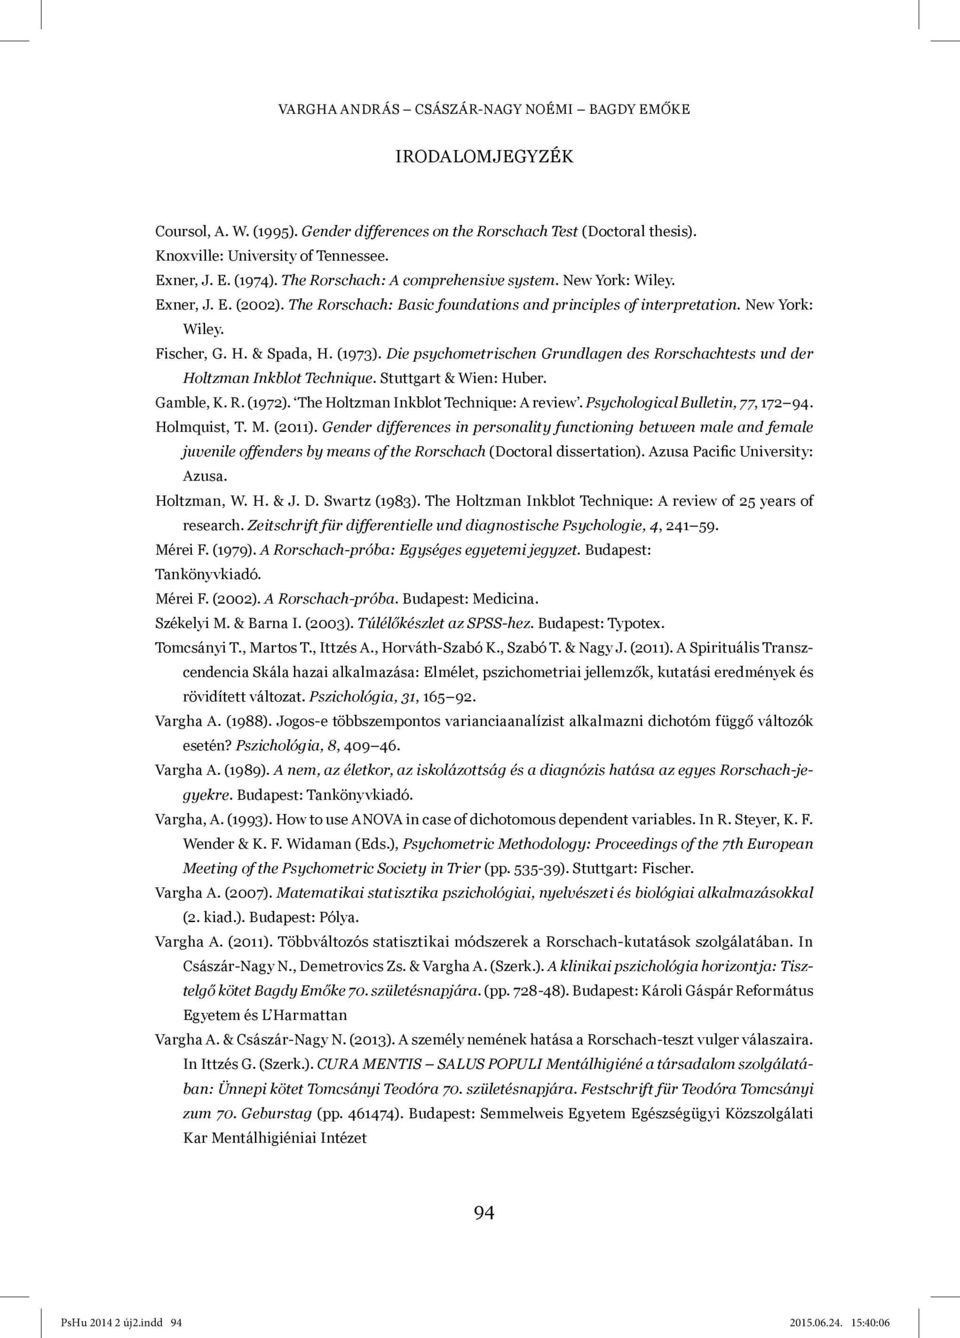 Die psychometrischen Grundlagen des Rorschachtests und der Holtzman Inkblot Technique. Stuttgart & Wien: Huber. Gamble, K. R. (1972). The Holtzman Inkblot Technique: A review.